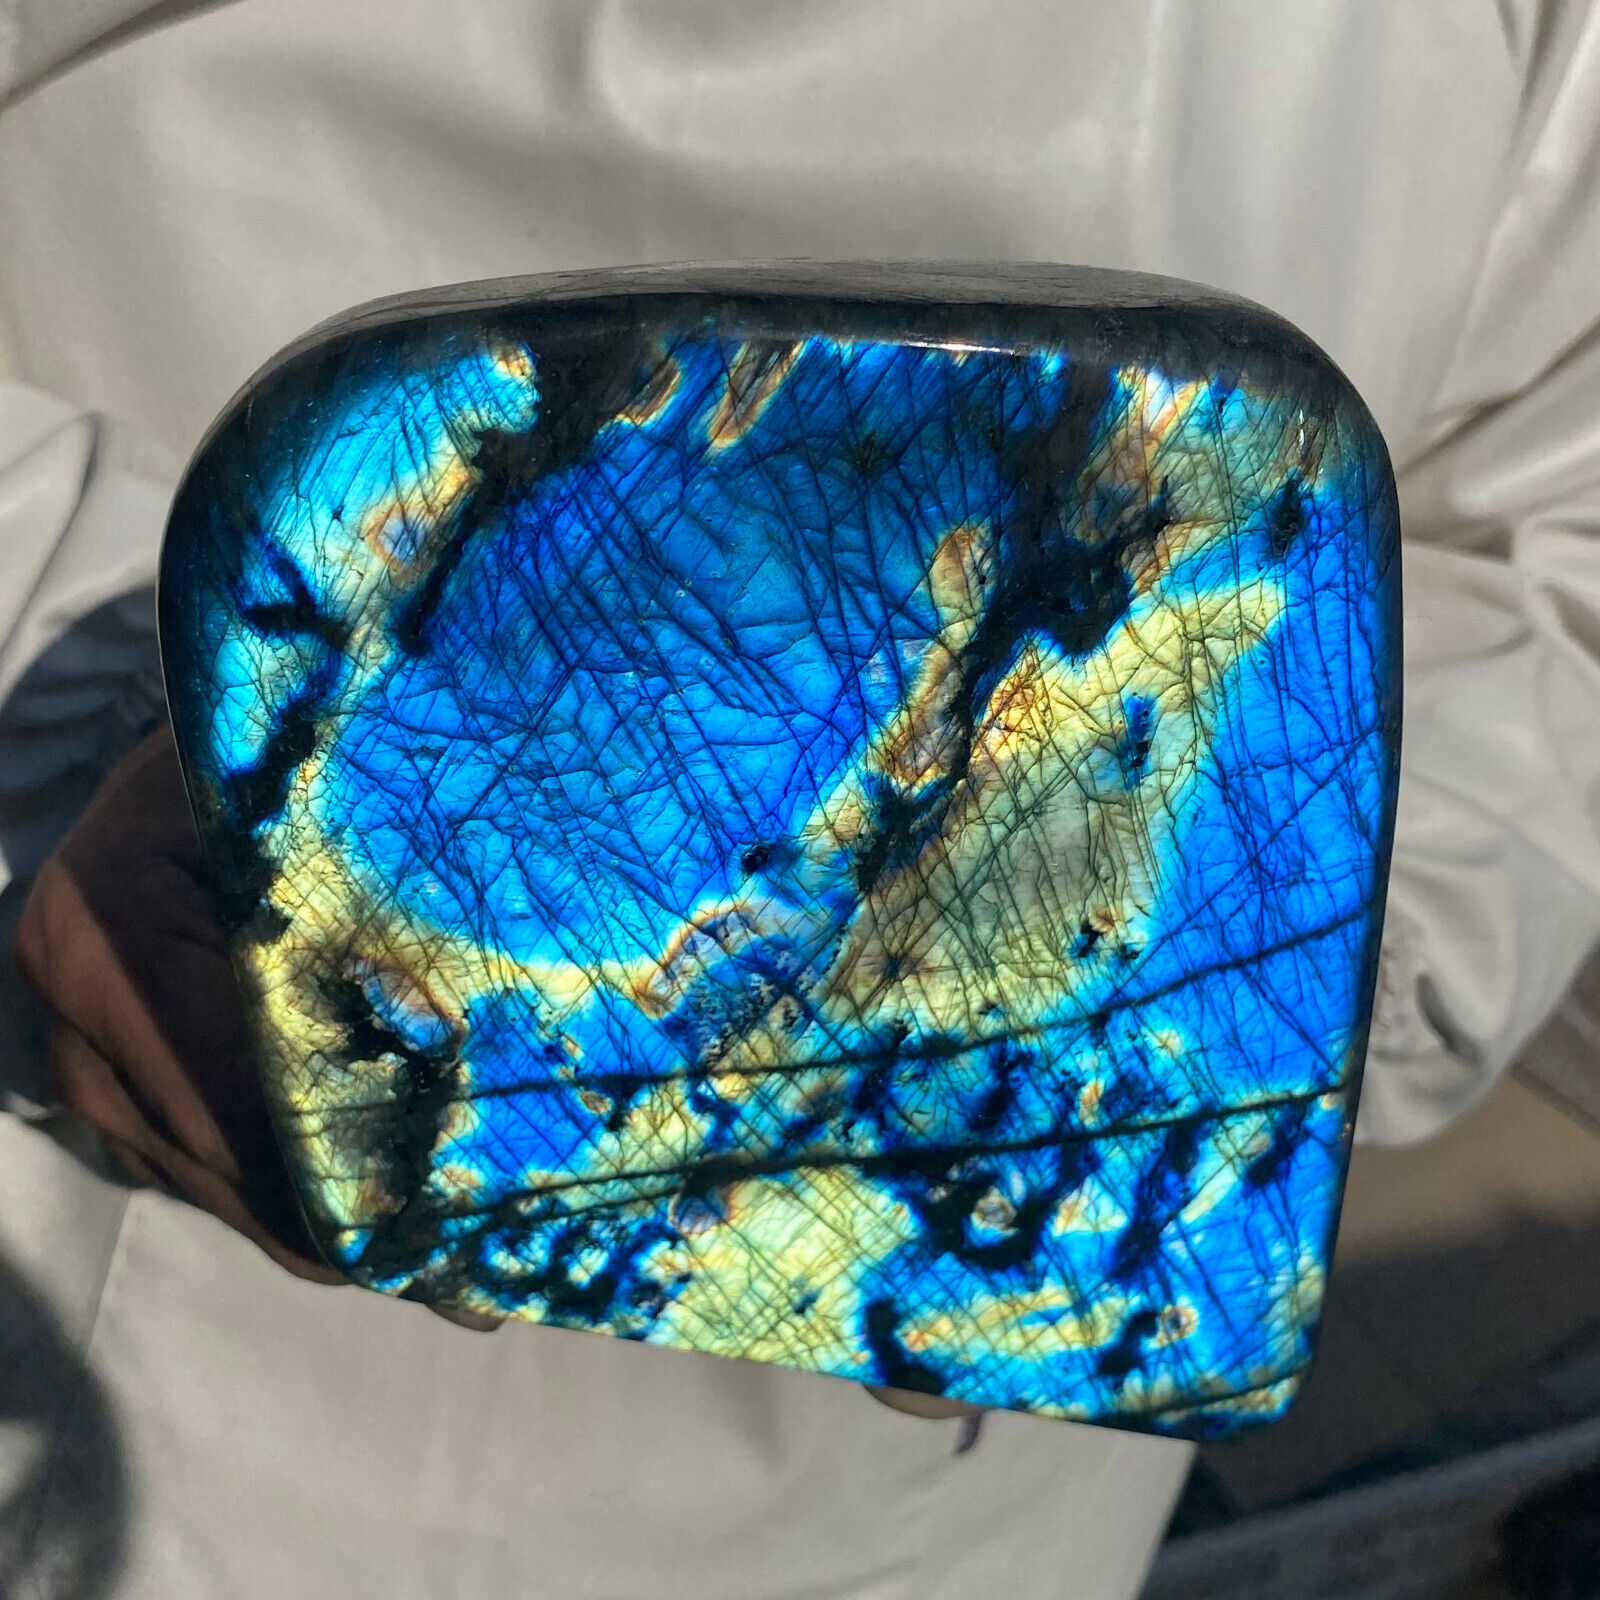 5.4lb Natural Labradorite Quartz Crystal Display Mineral Specimen Healing